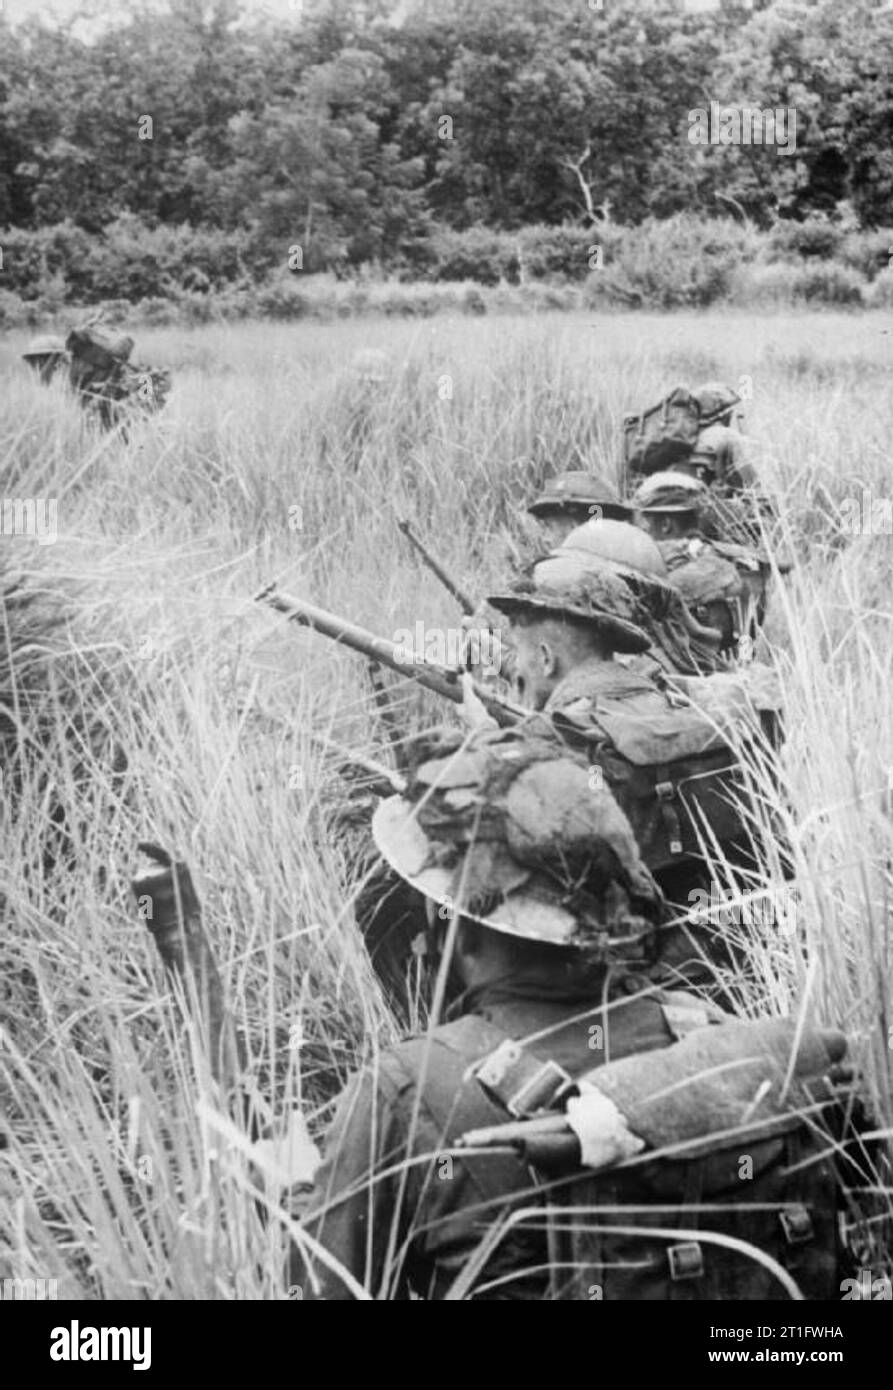 Die britische Armee in Birma 1944 Männer der Royal Welsh Fusiliers, 29 Infanterie Brigade, 36th Infantry Division, mit Reisfeldern Abdeckung an japanischen Positionen um Pinbaw, 1944. Stockfoto